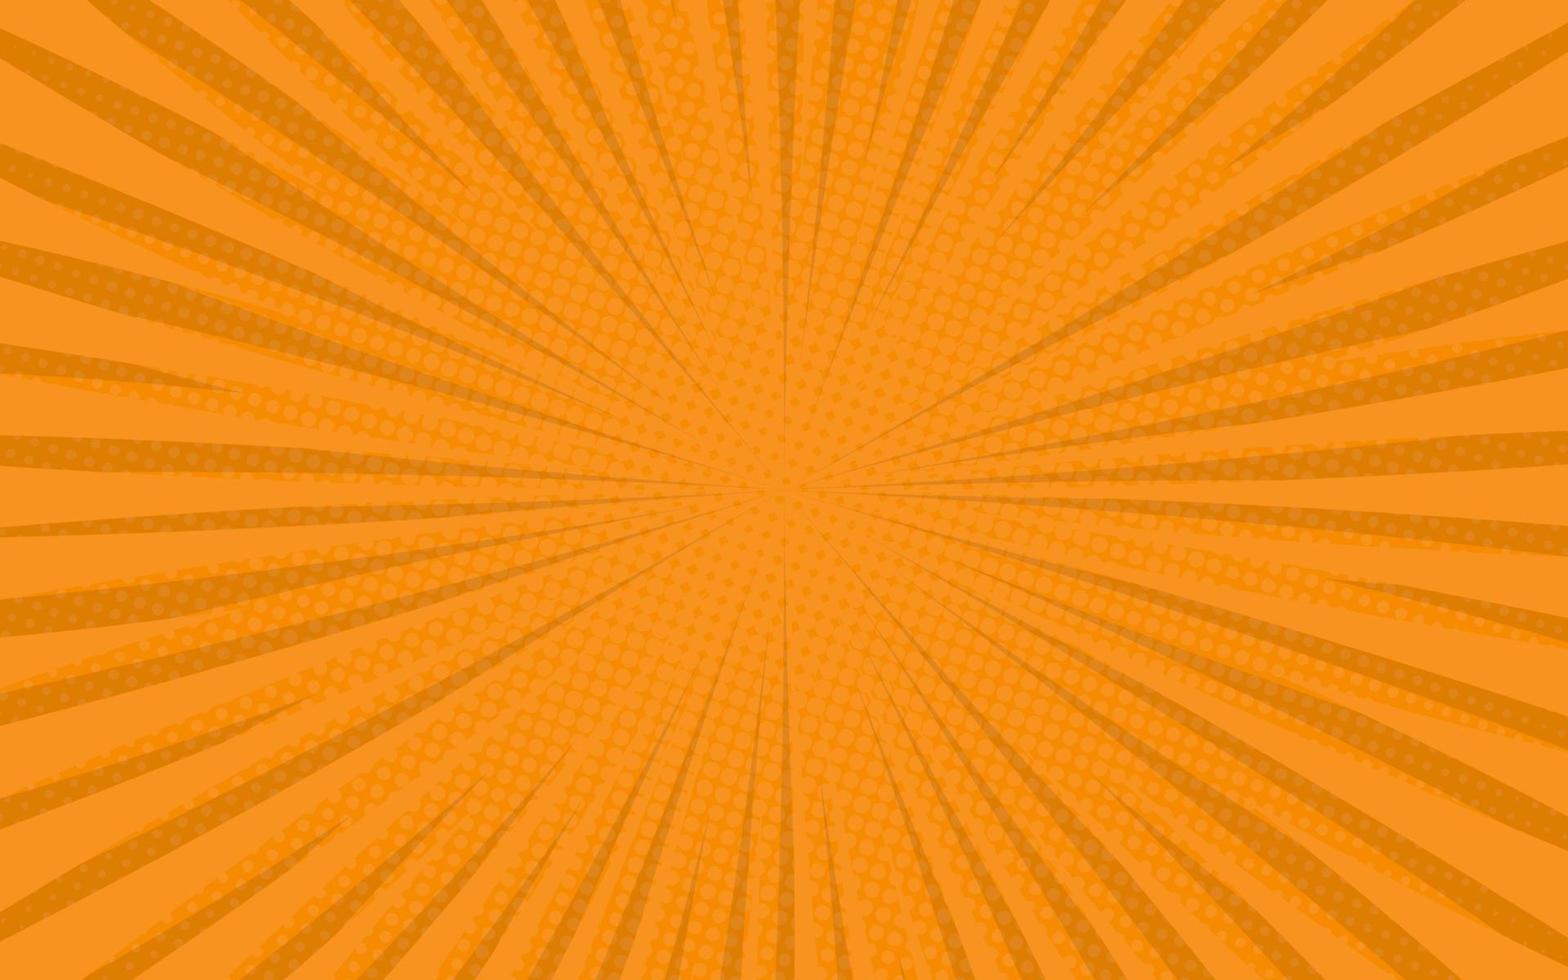 rayos de sol estilo retro vintage sobre fondo naranja. patrón cómico con estallido estelar y medios tonos. efecto de explosión de sol retro de dibujos animados con puntos. ilustración de vector de banner de verano